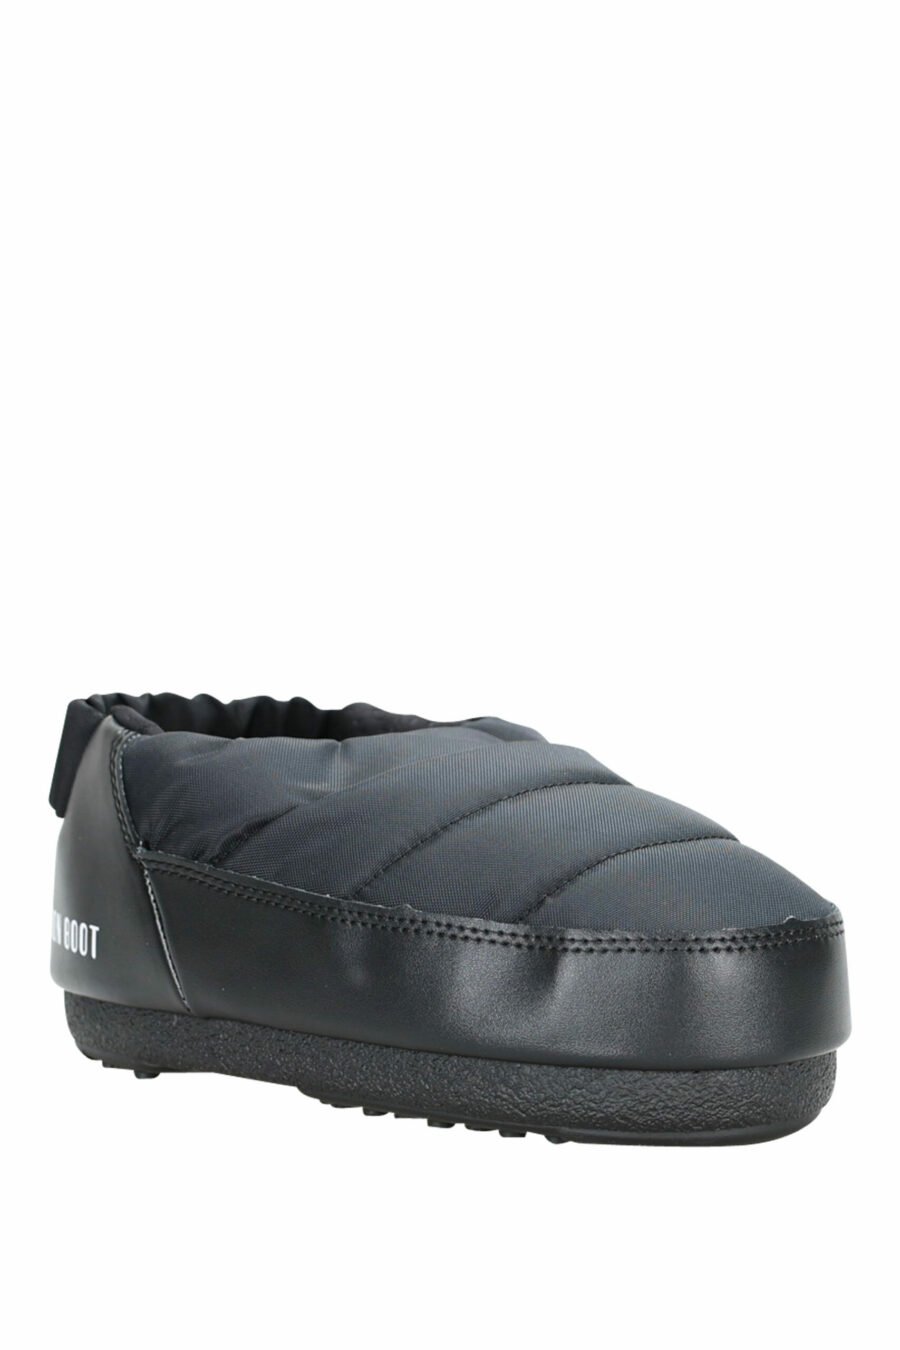 Schwarze Sandalen mit weißem Mini-Logo - 8050032004042 1 skaliert